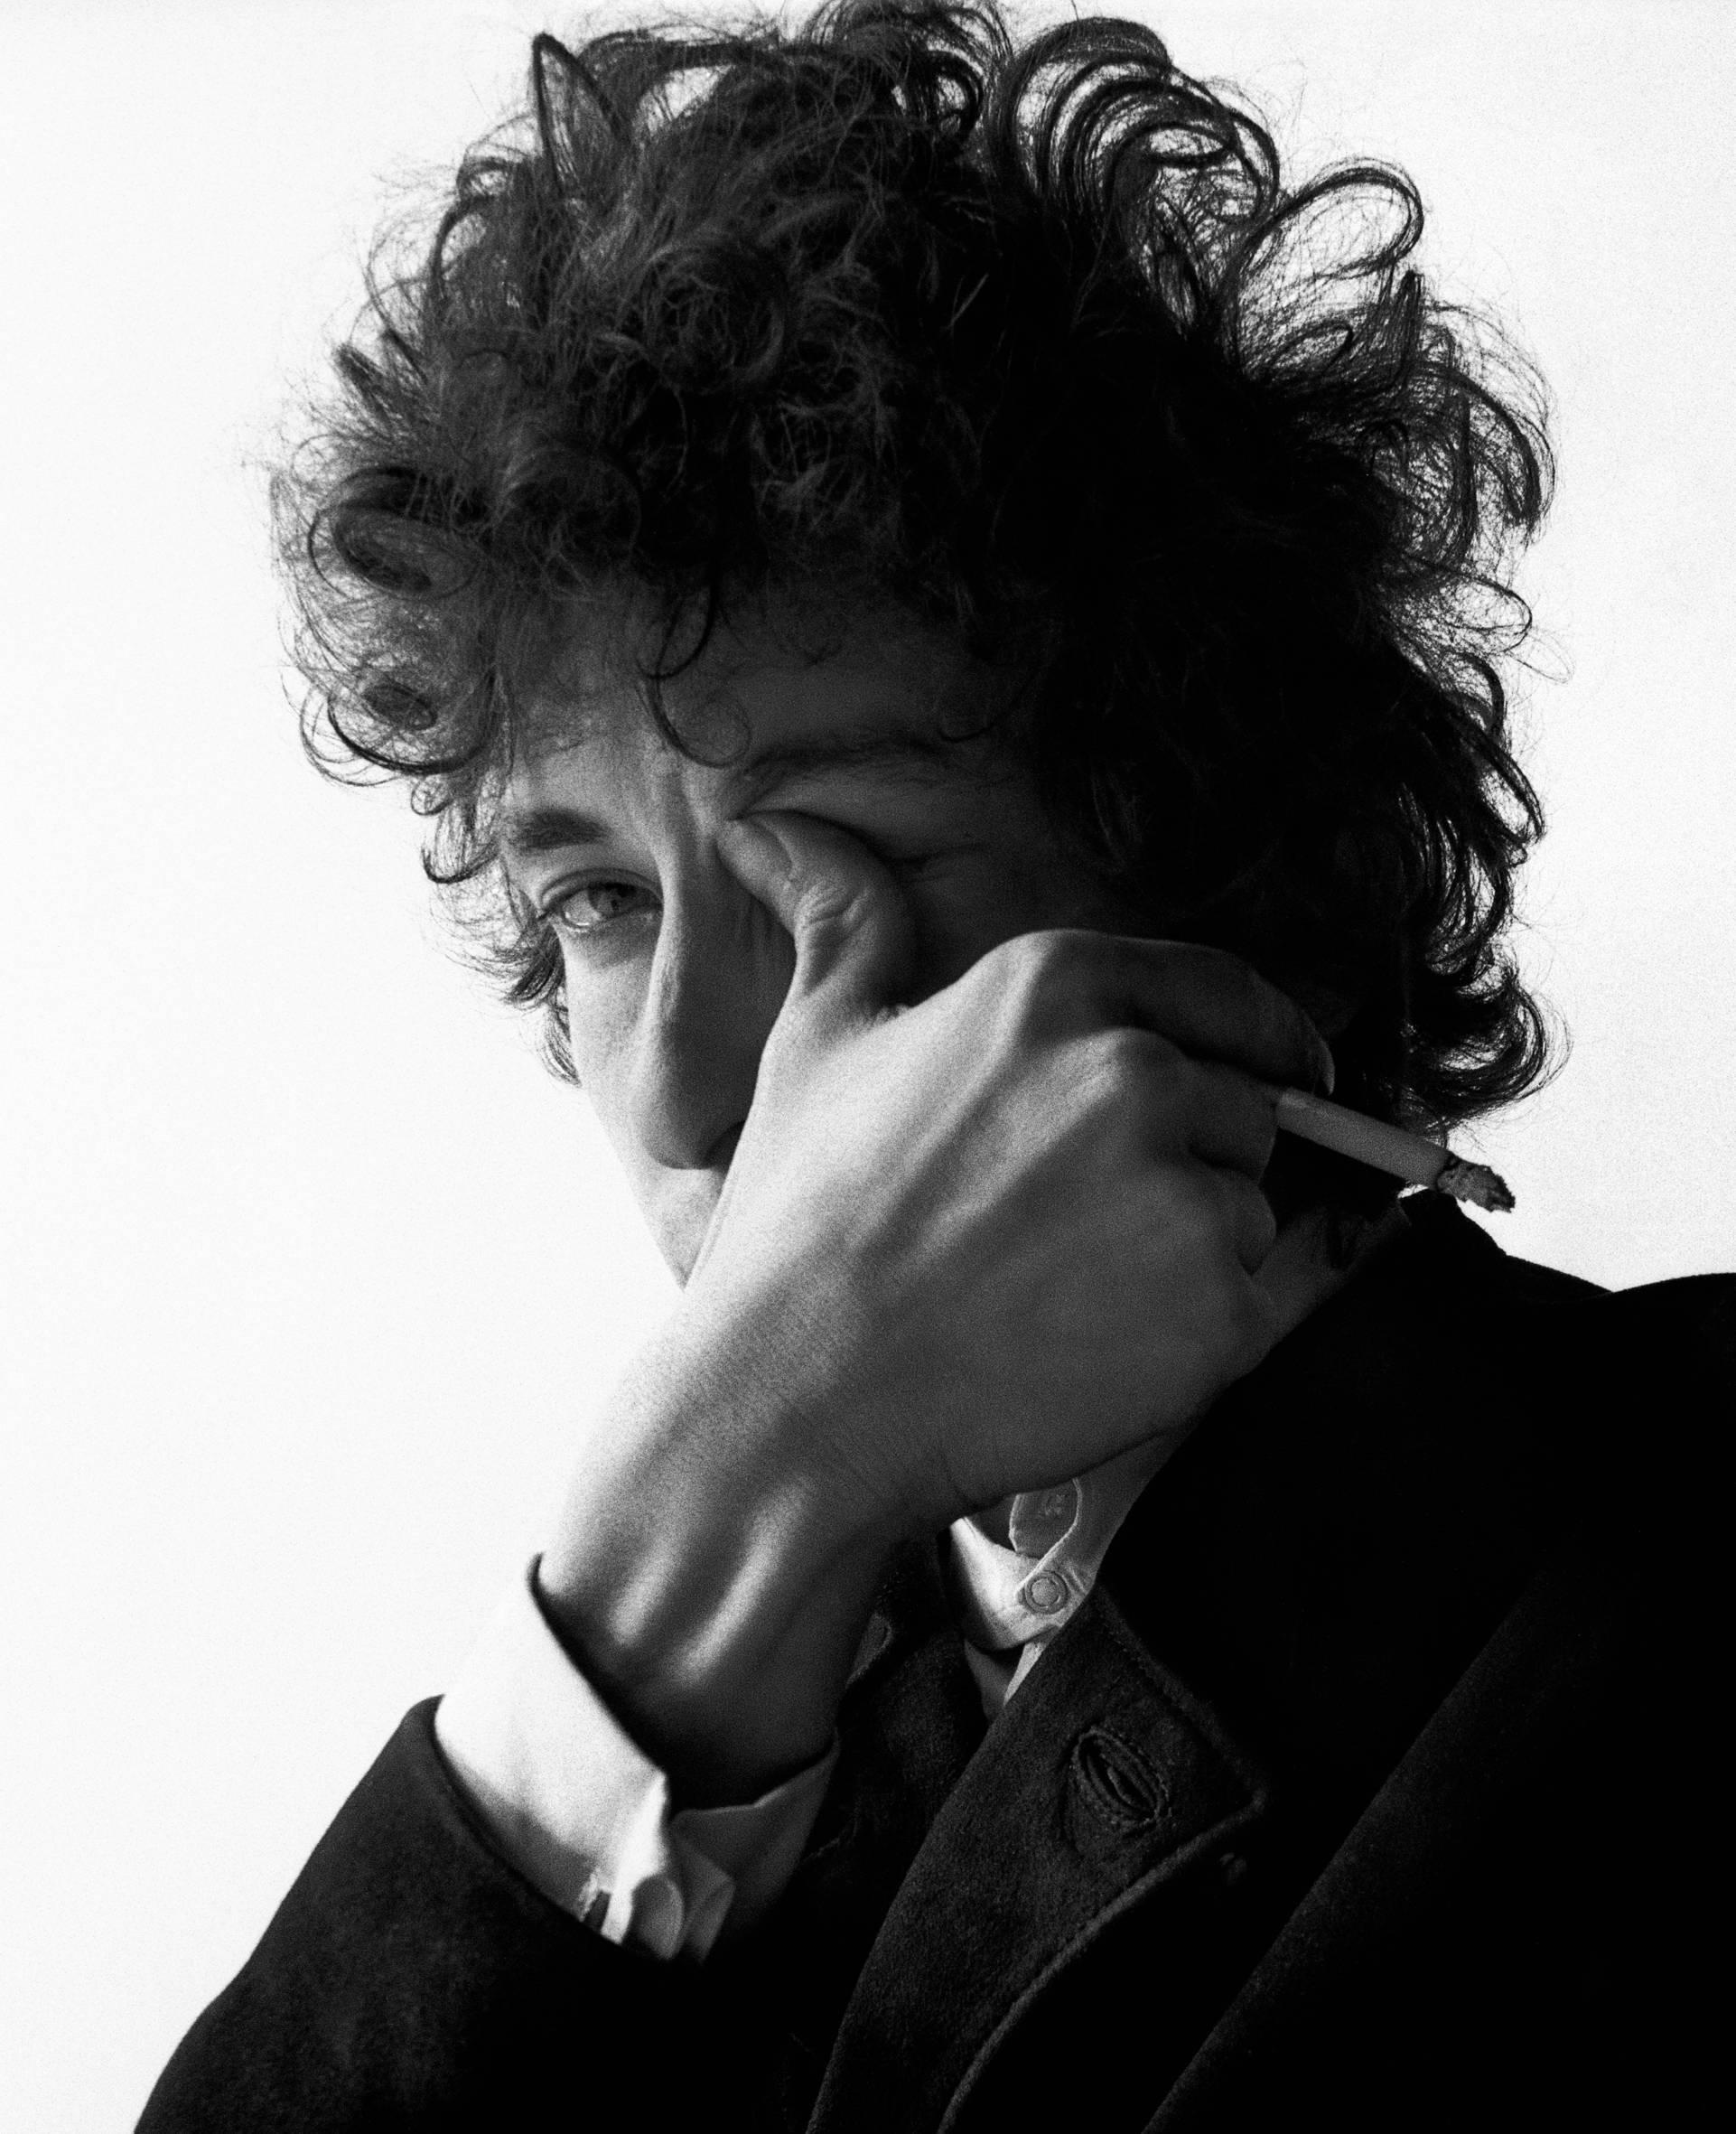 Bob Dylan - Jerry Schatzberg (Porträtfotografie)
Signiert und nummeriert auf der Rückseite
Moderner Silbergelatineabzug
Gedruckt auf 24 x 20 Zoll Papier
Aus einer Auflage von zwanzig

Jerry Schatzbergs Porträts zeichnen sich durch ihre erzählerische